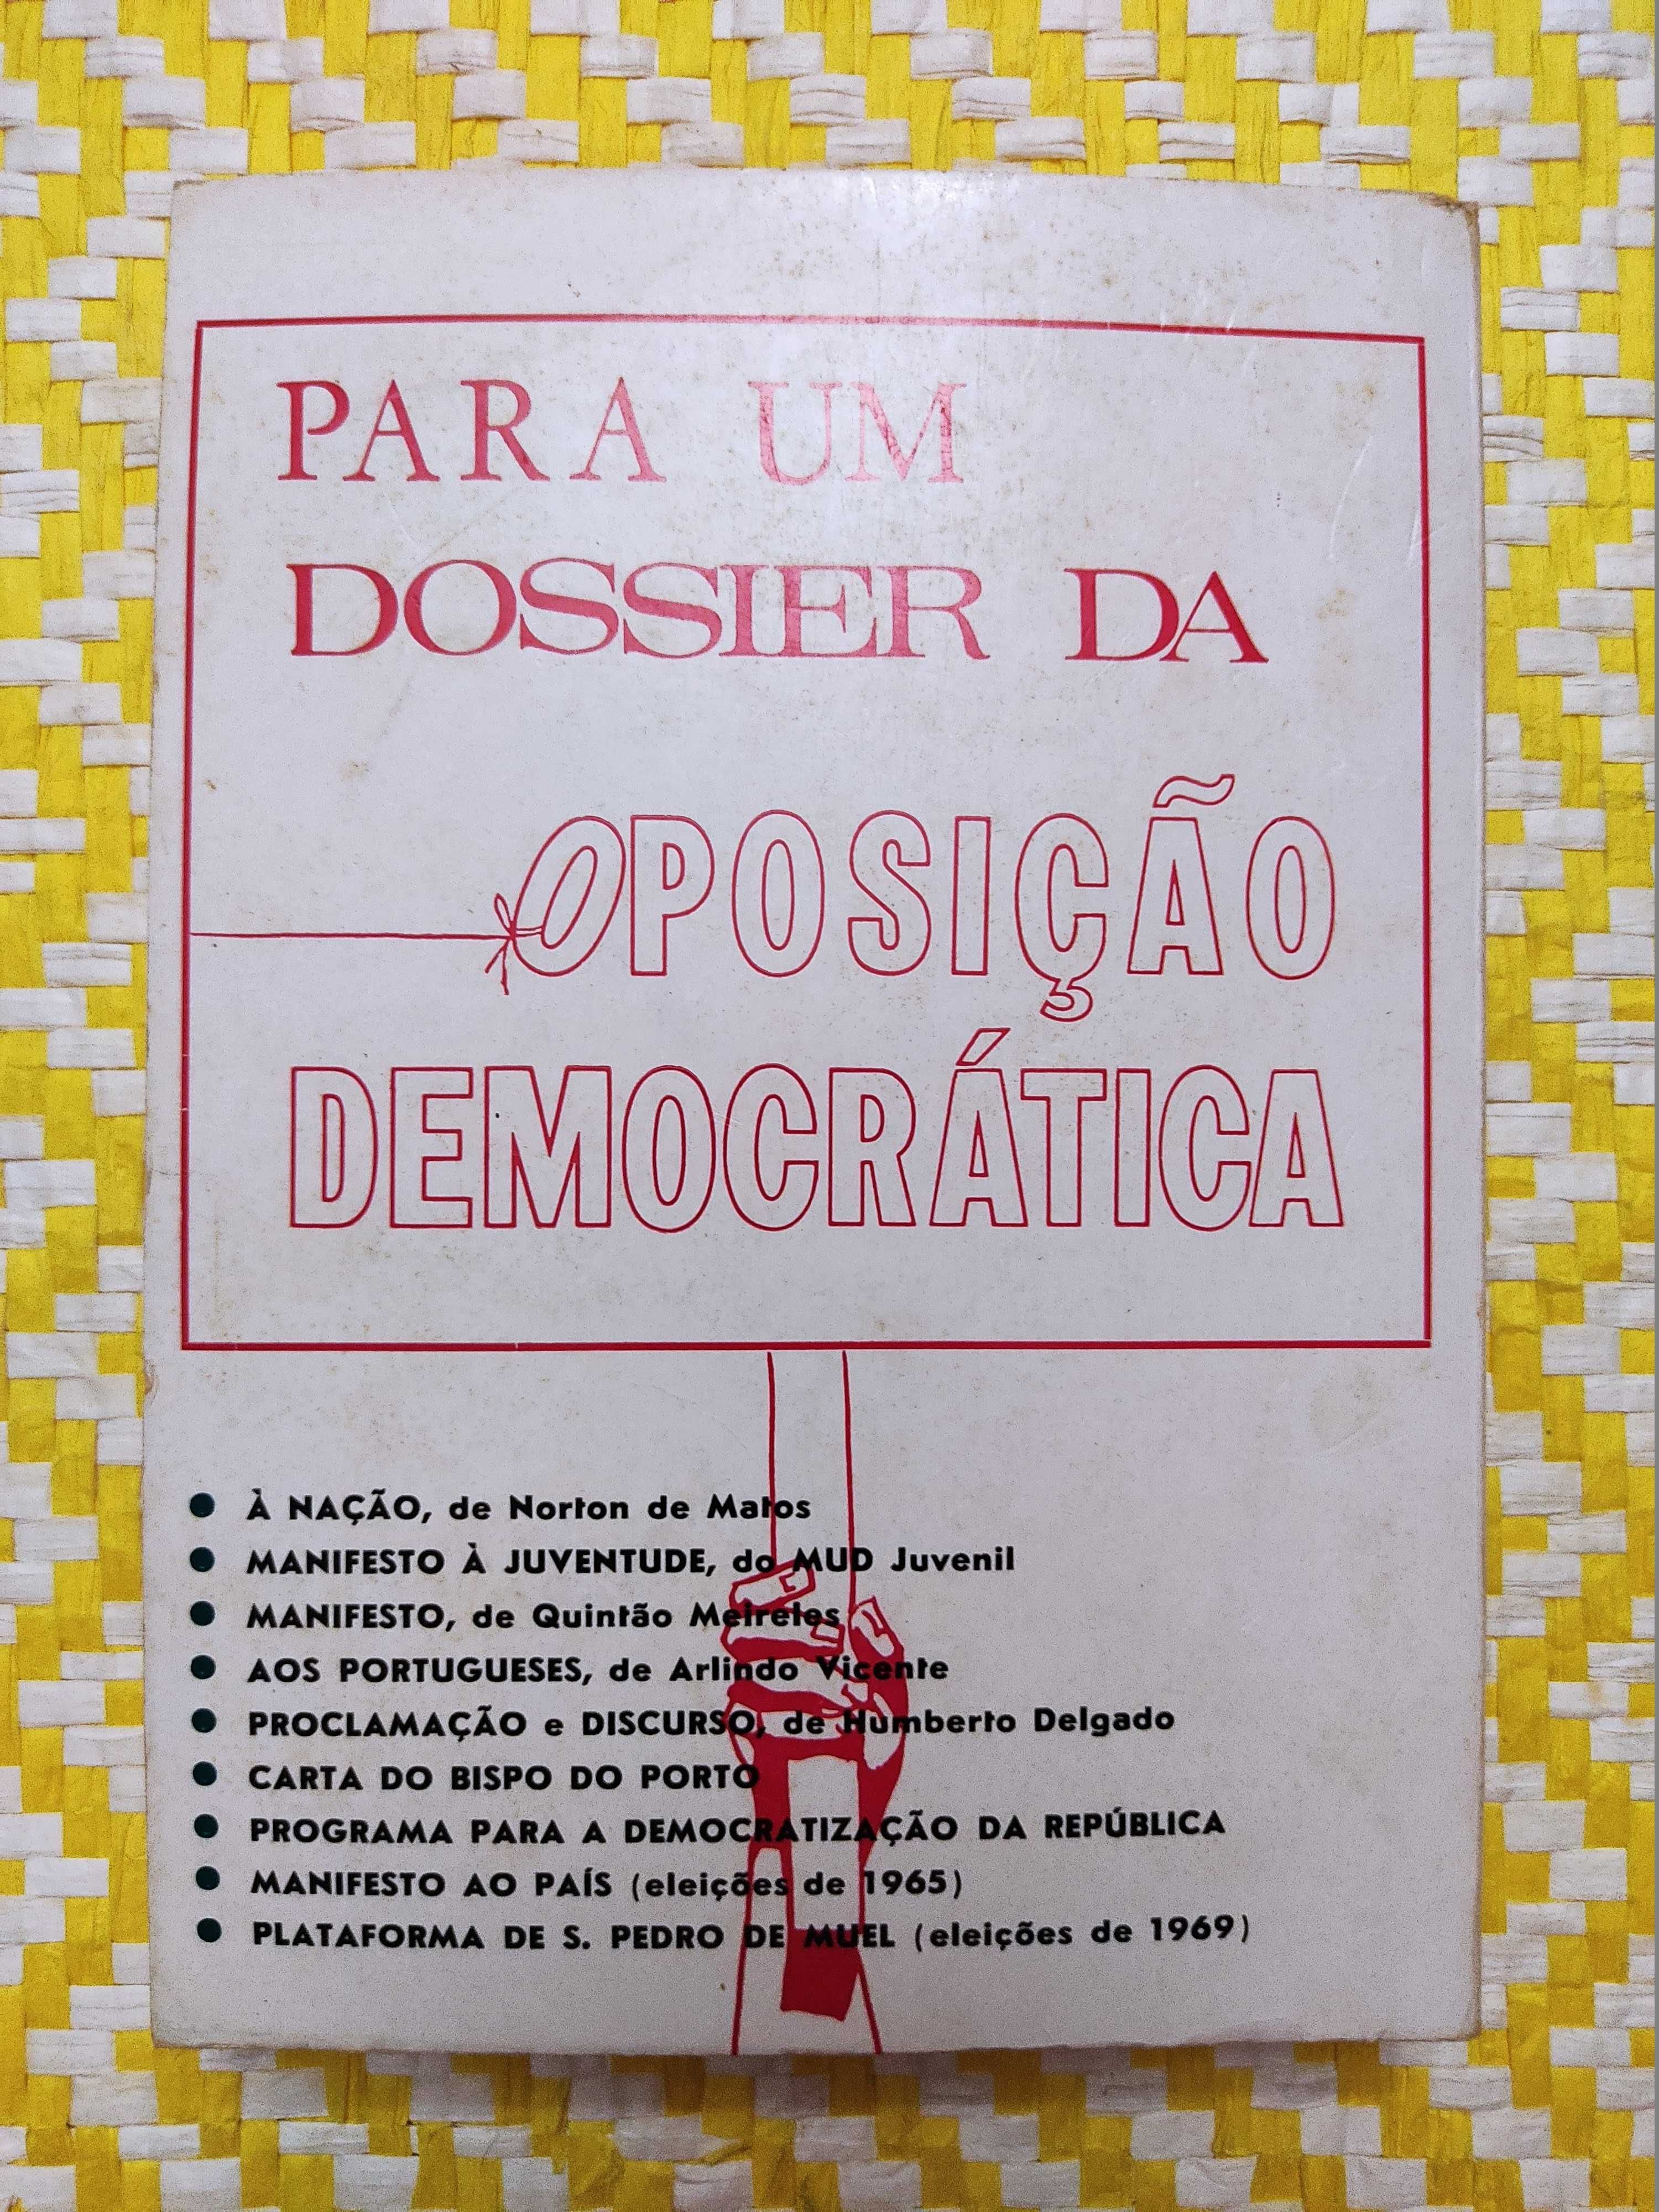 Para um dossier da Oposição Democrática  

S.Ferreira e  Arsénio Mota